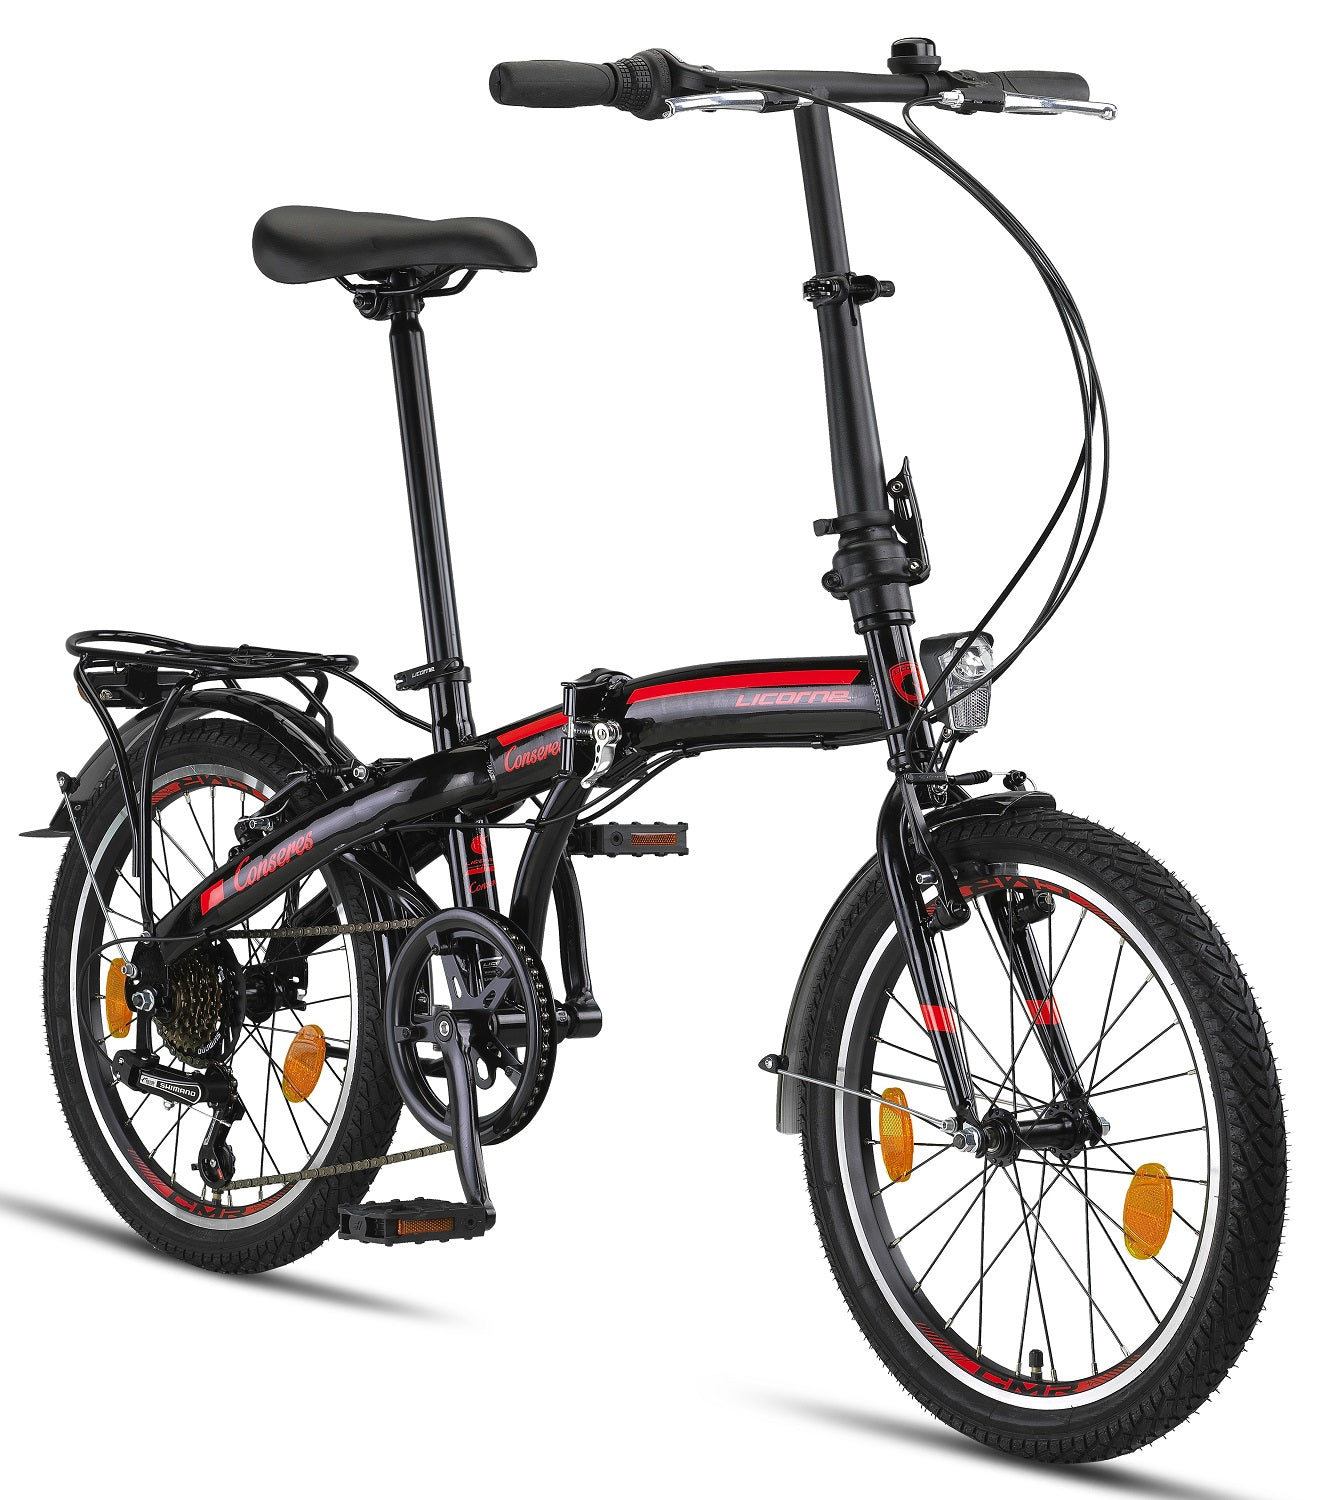 Licorne Bike Conseres Premium Folding Bike in 20 Inch - Bicicleta para hombres, niños, niñas y señoras - Shimano 6 Speed Gear - Holland Bike